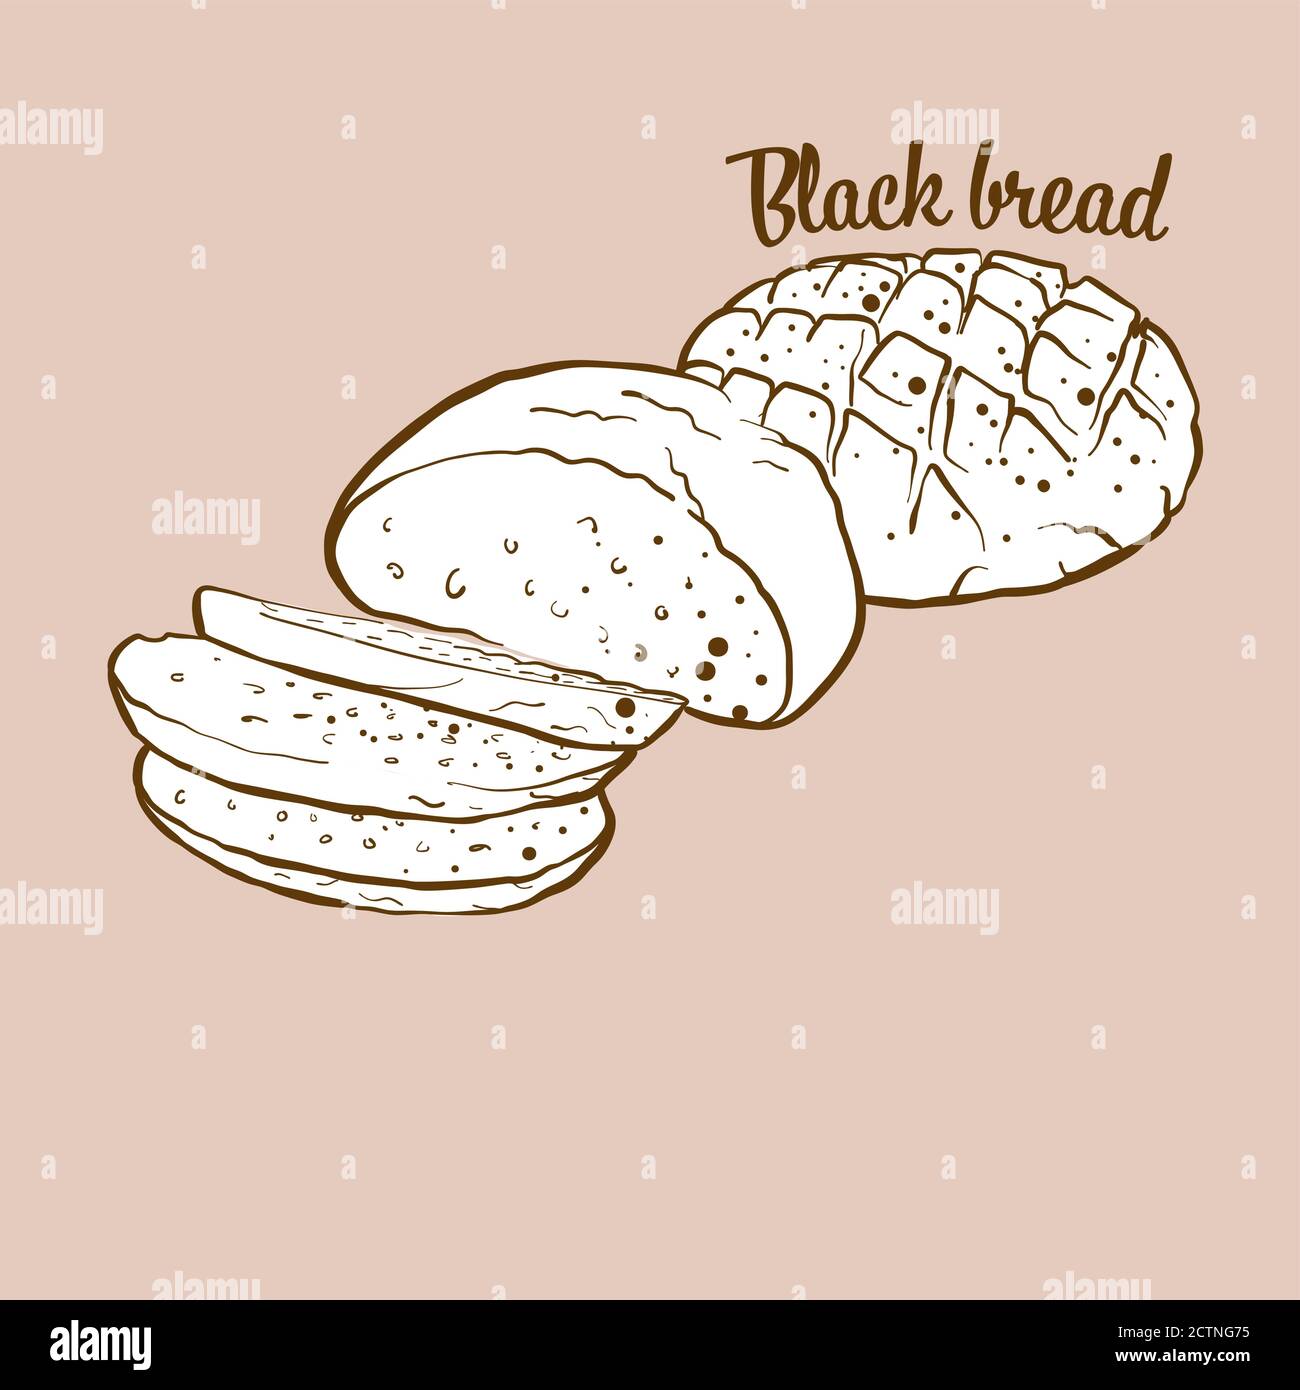 Illustrazione del pane nero disegnato a mano. Pane di segale, di solito conosciuto in Europa. Serie di disegni vettoriali. Illustrazione Vettoriale